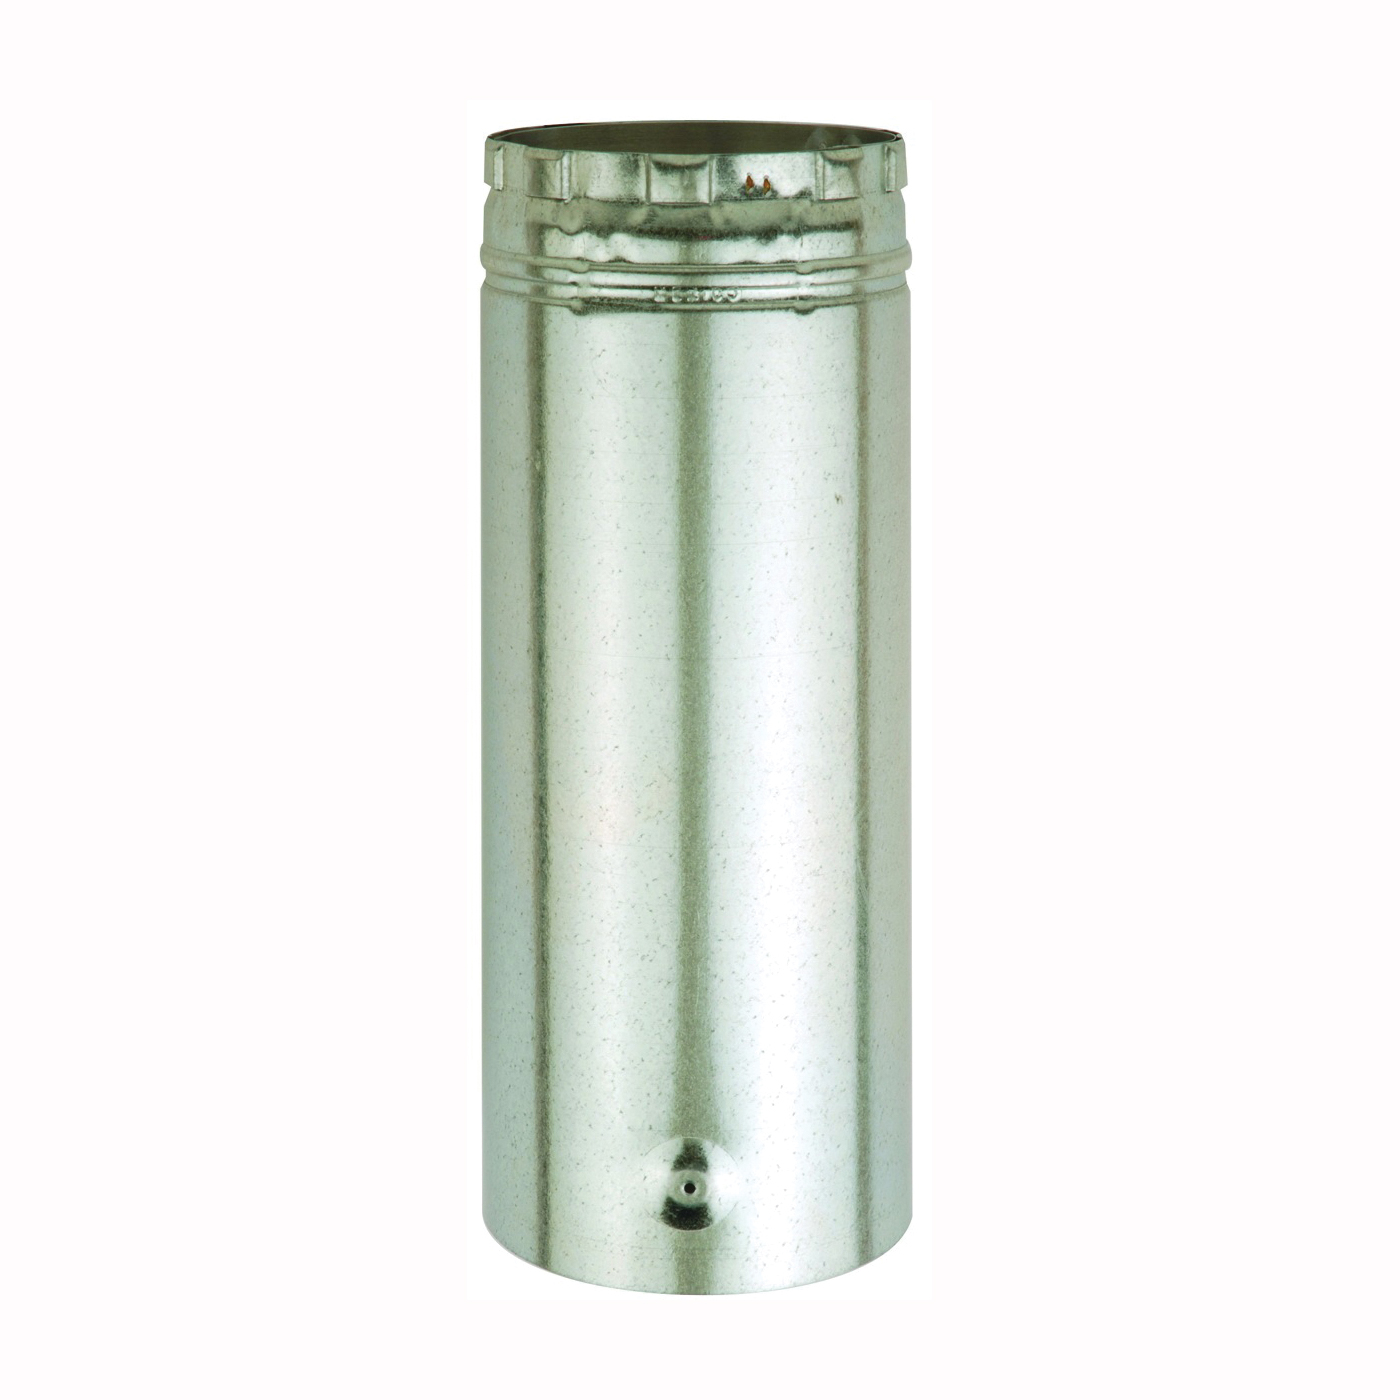 3E12A Type B Gas Vent Pipe, 3 in OD, 12 in L, Aluminum/Galvanized Steel, Brass